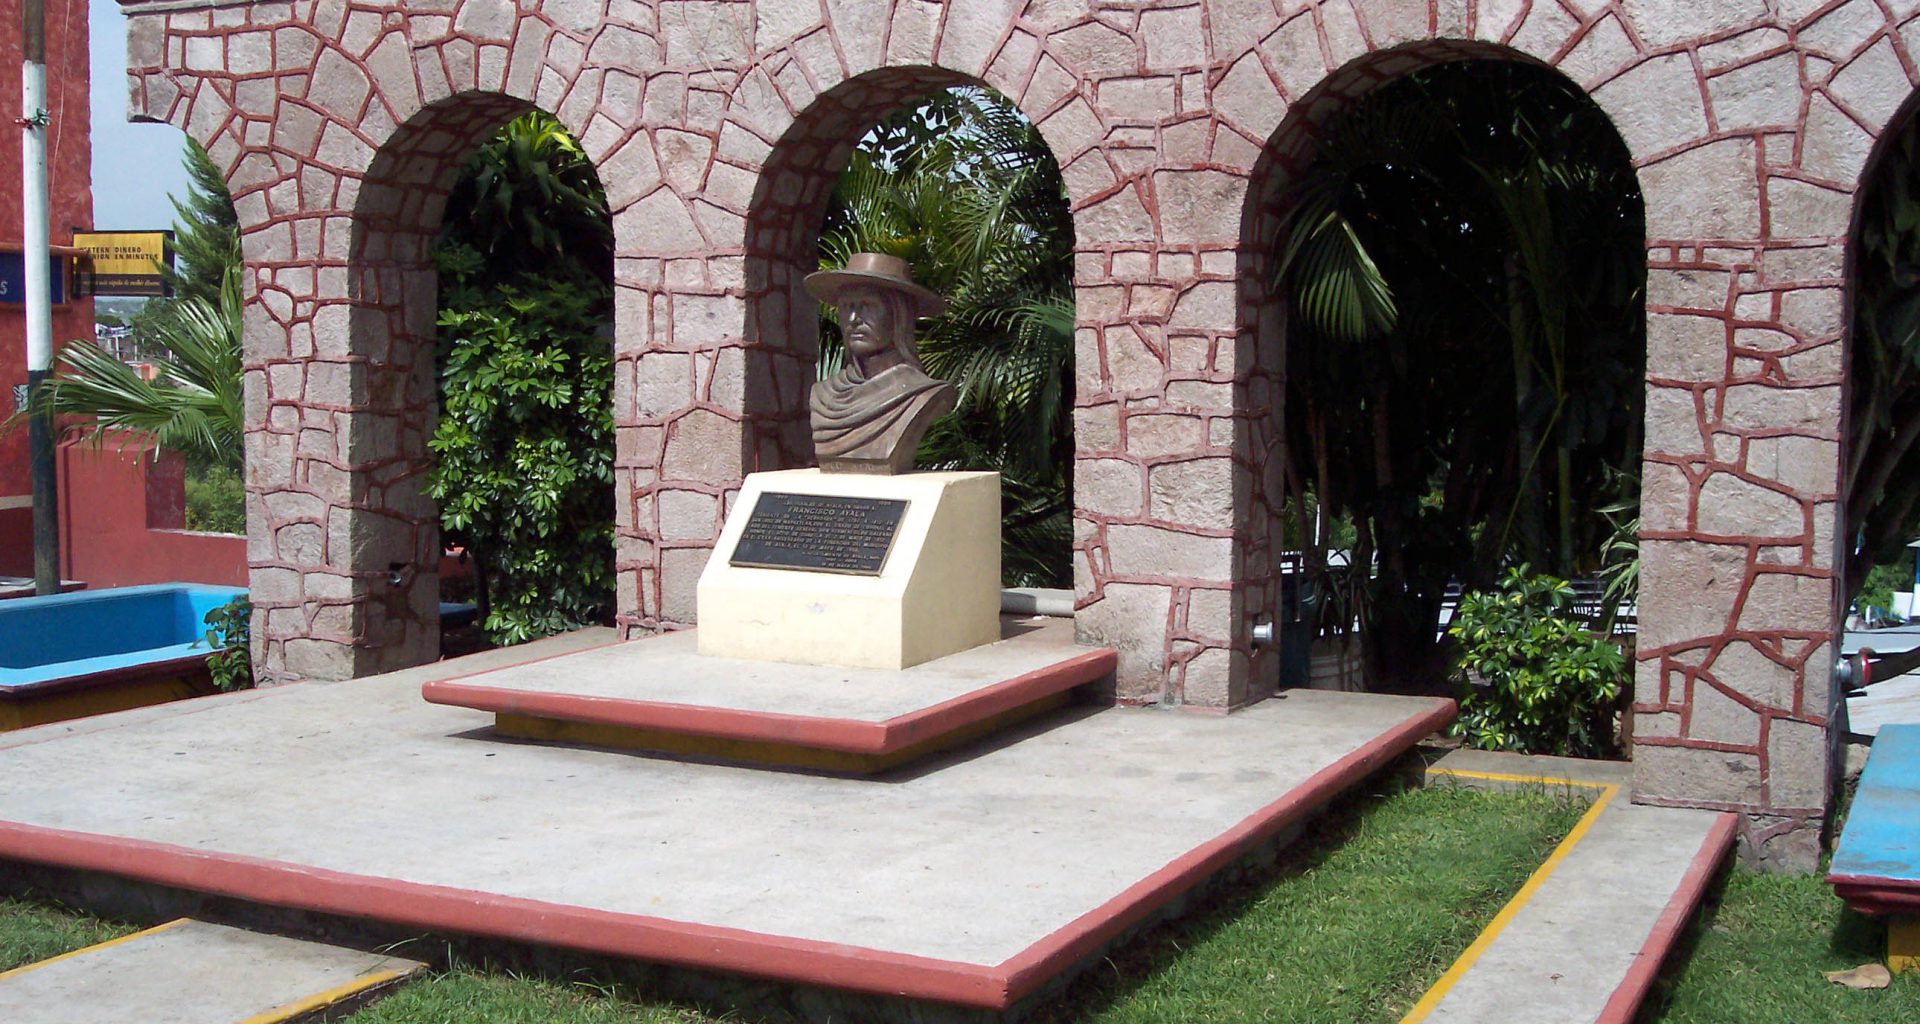 Ayala Morelos